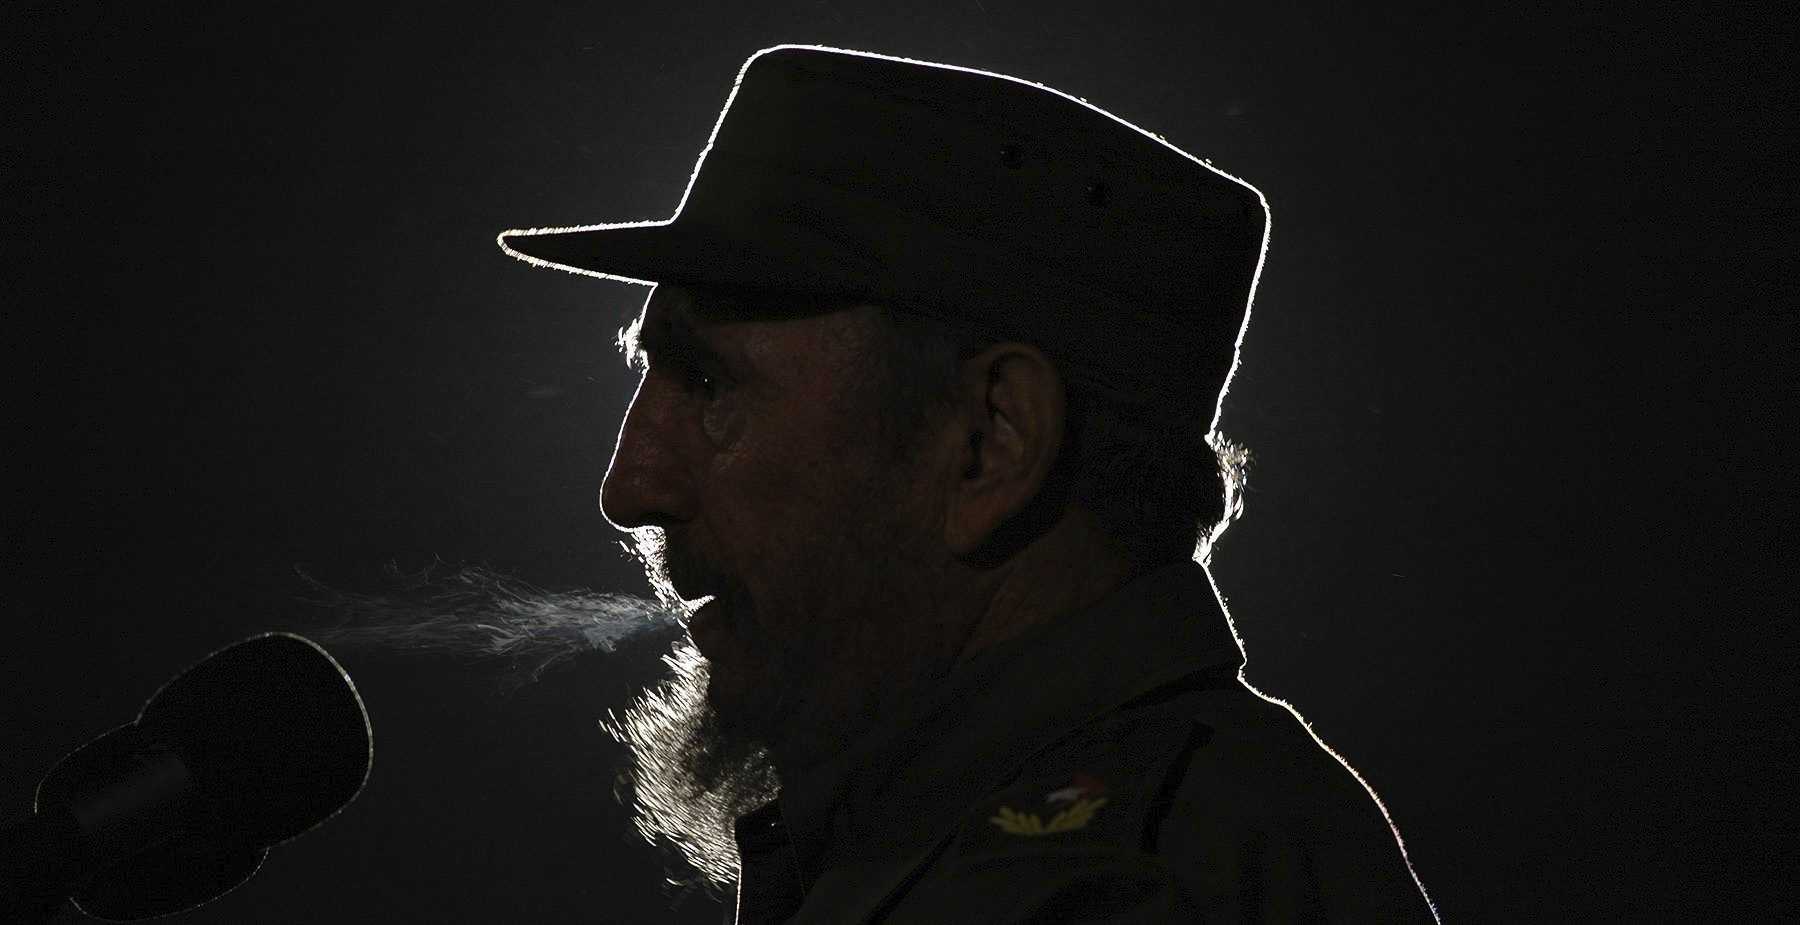 "La història m'absoldrà" i altres frases històriques de Fidel Castro